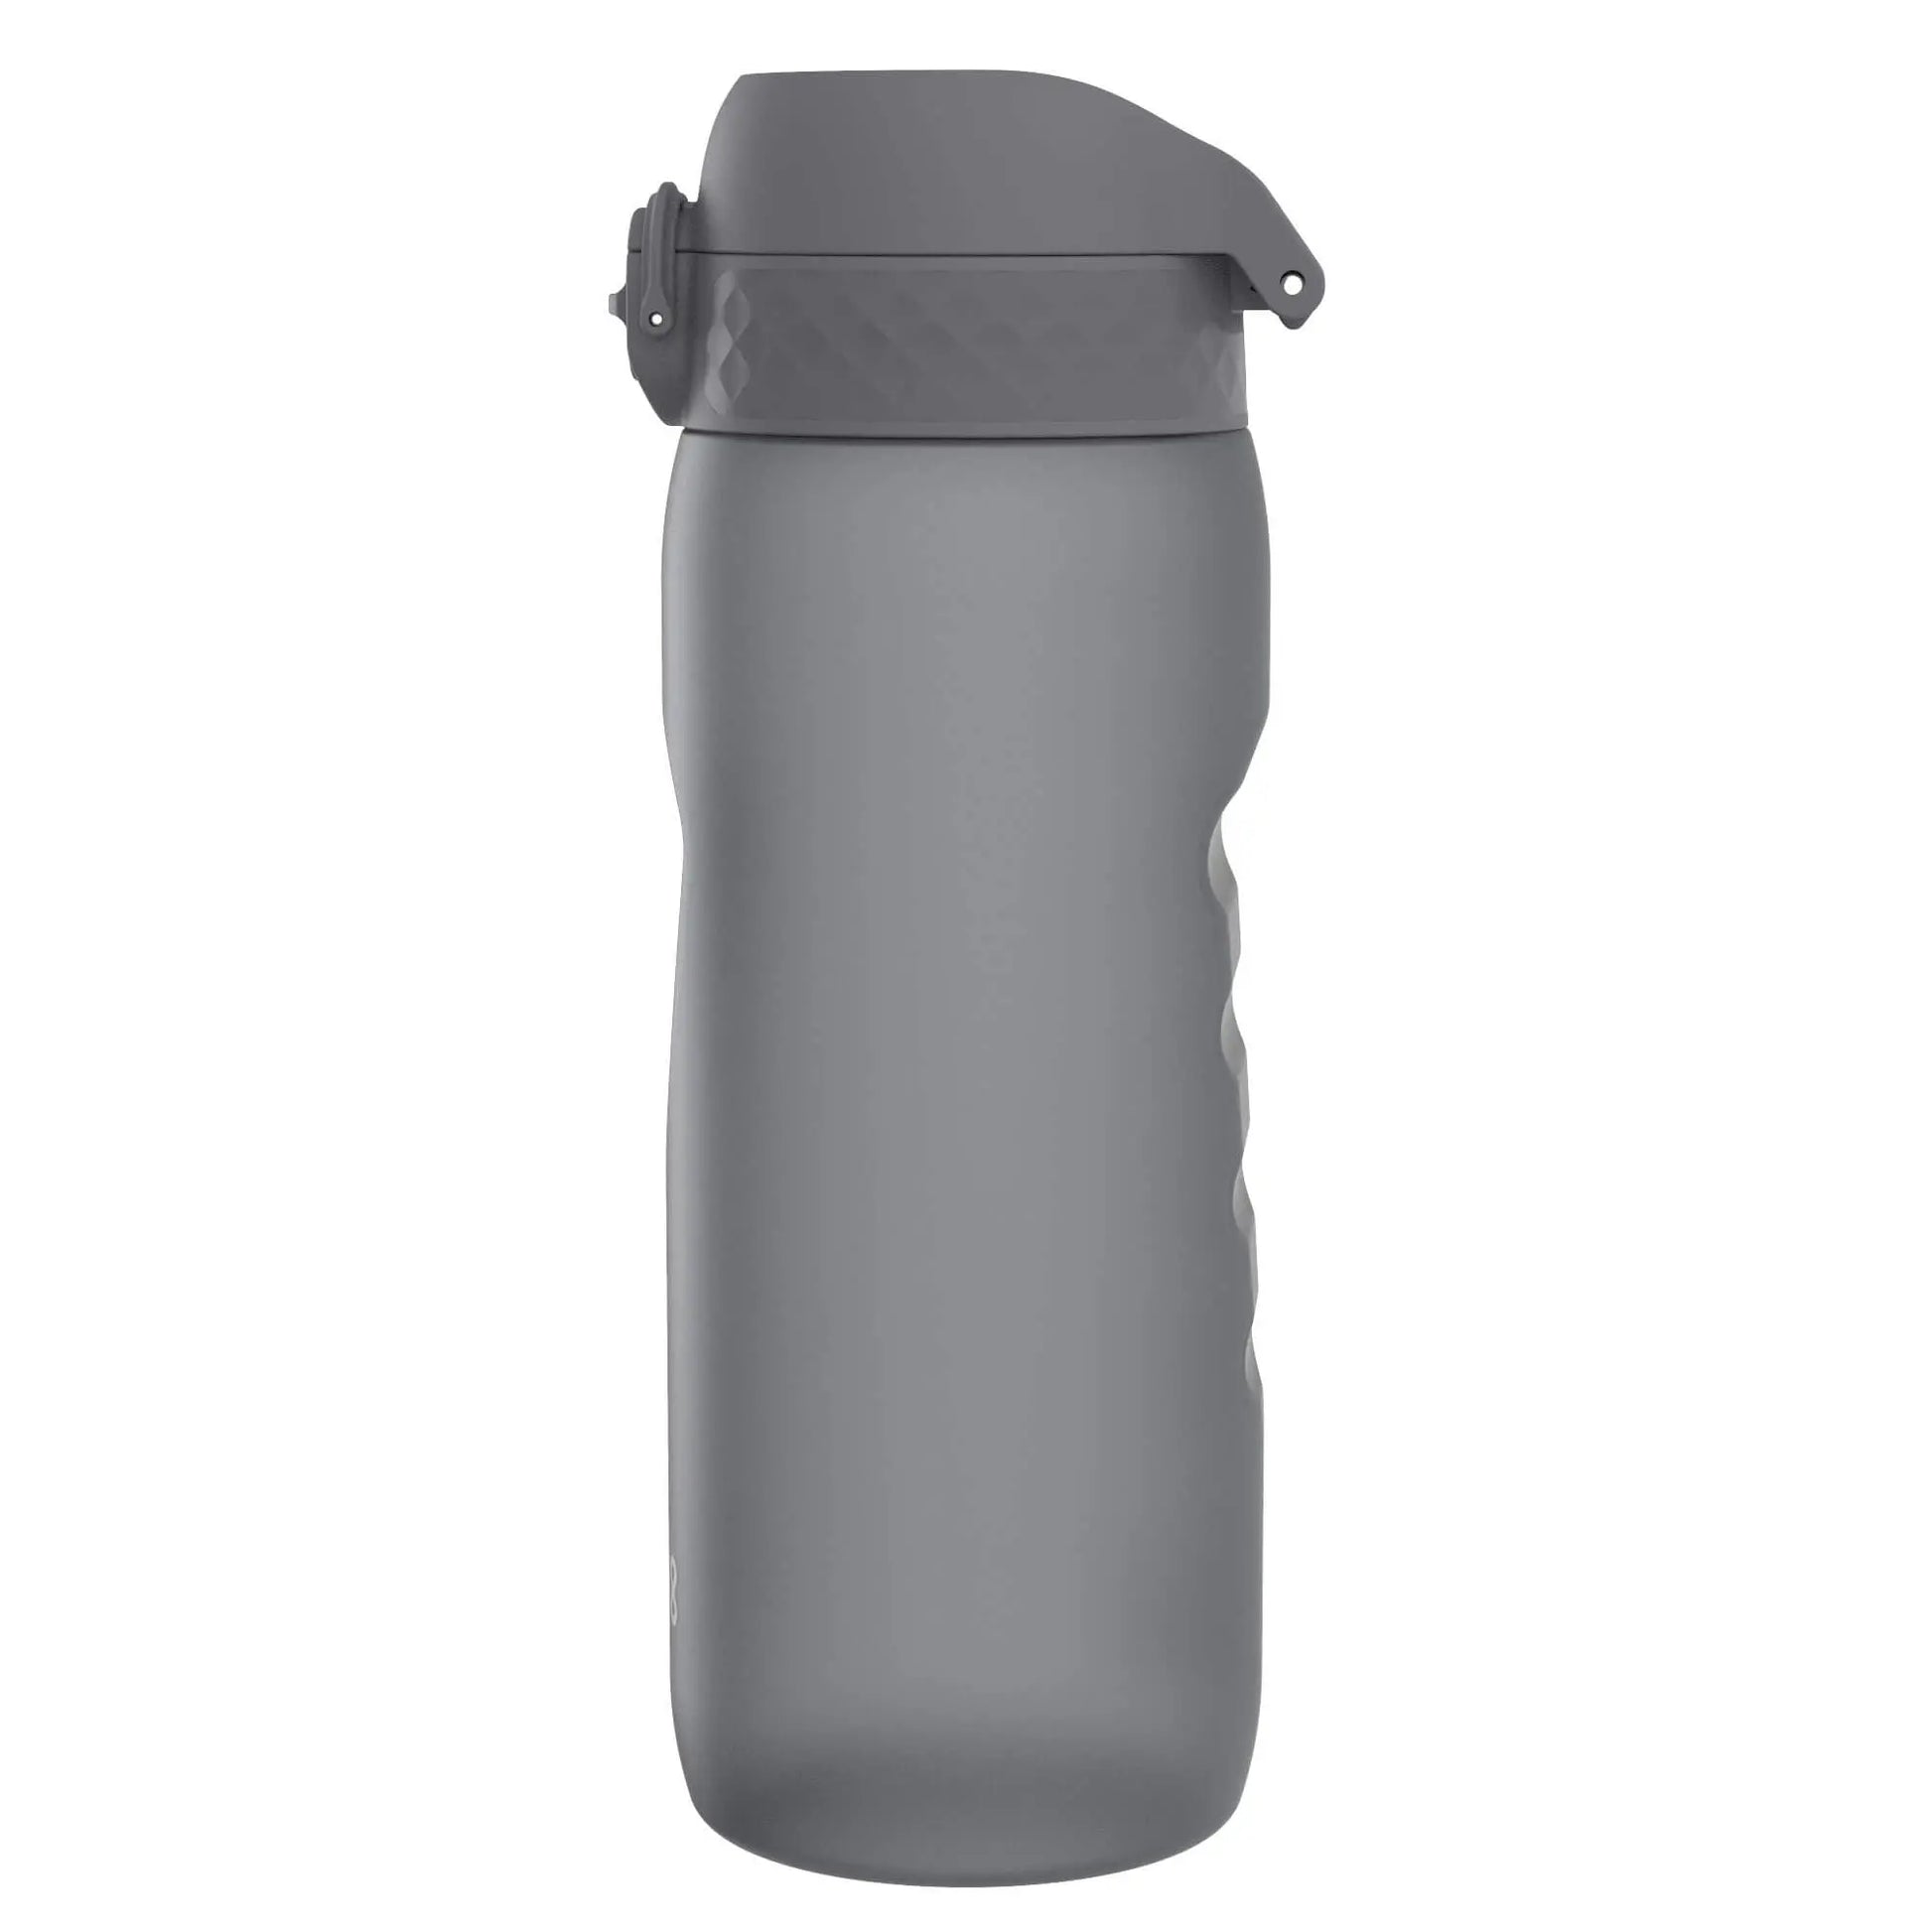 Leak Proof Water Bottle, Recyclon™, Grey, 750ml (24oz) Ion8